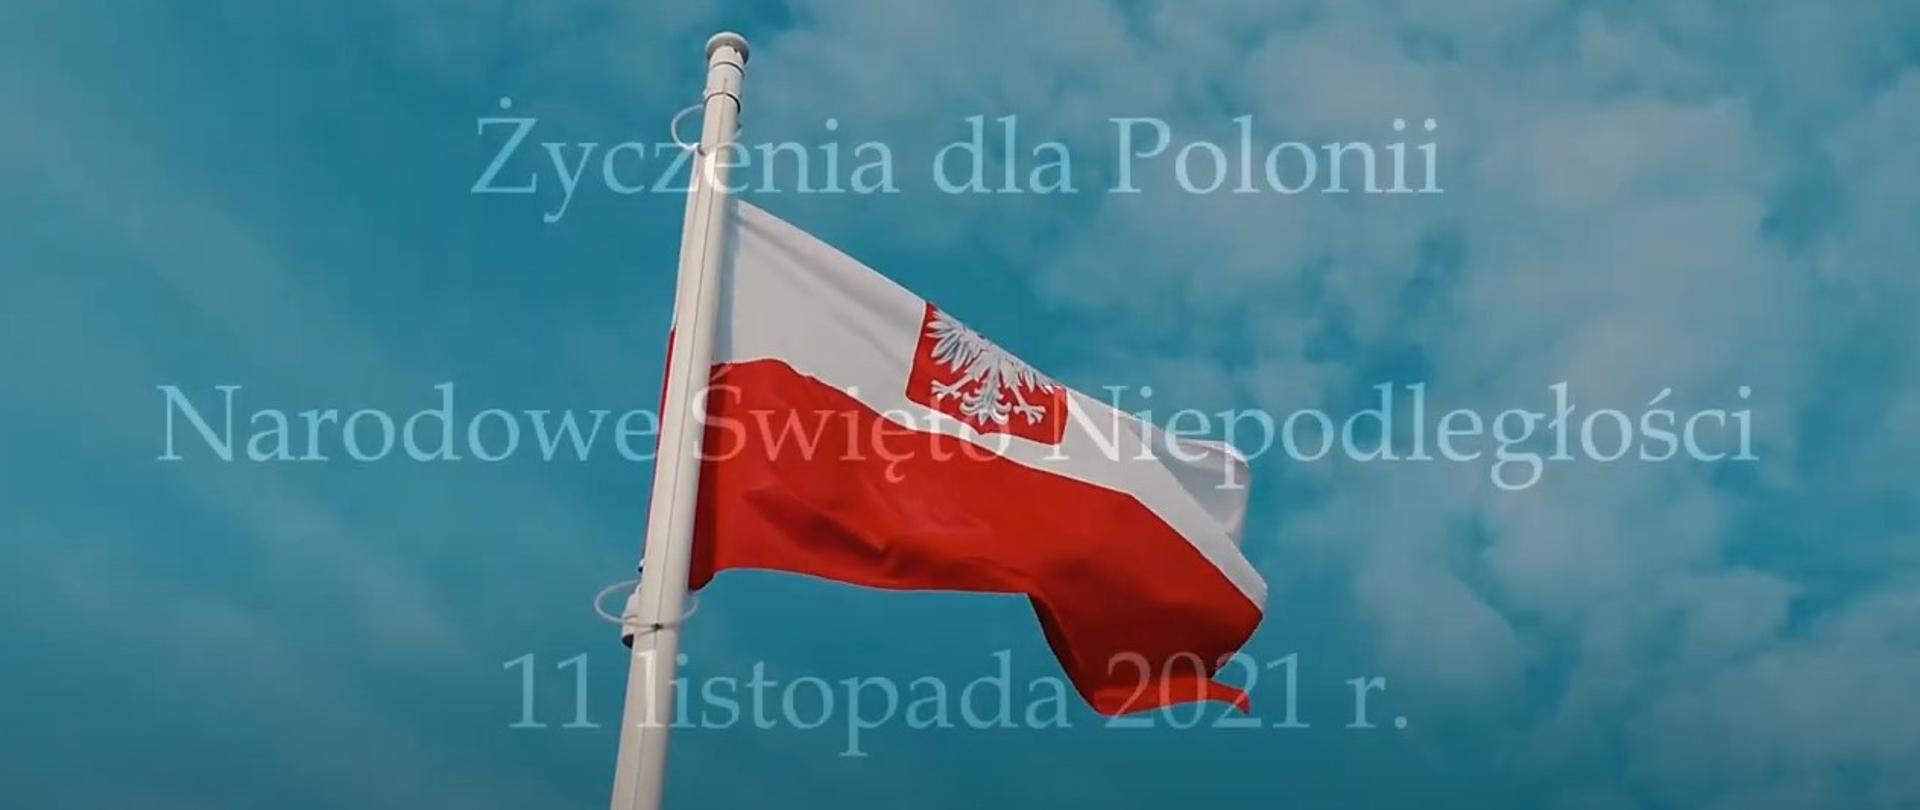 Życzenia dla Polonii z okazji 11 listopada